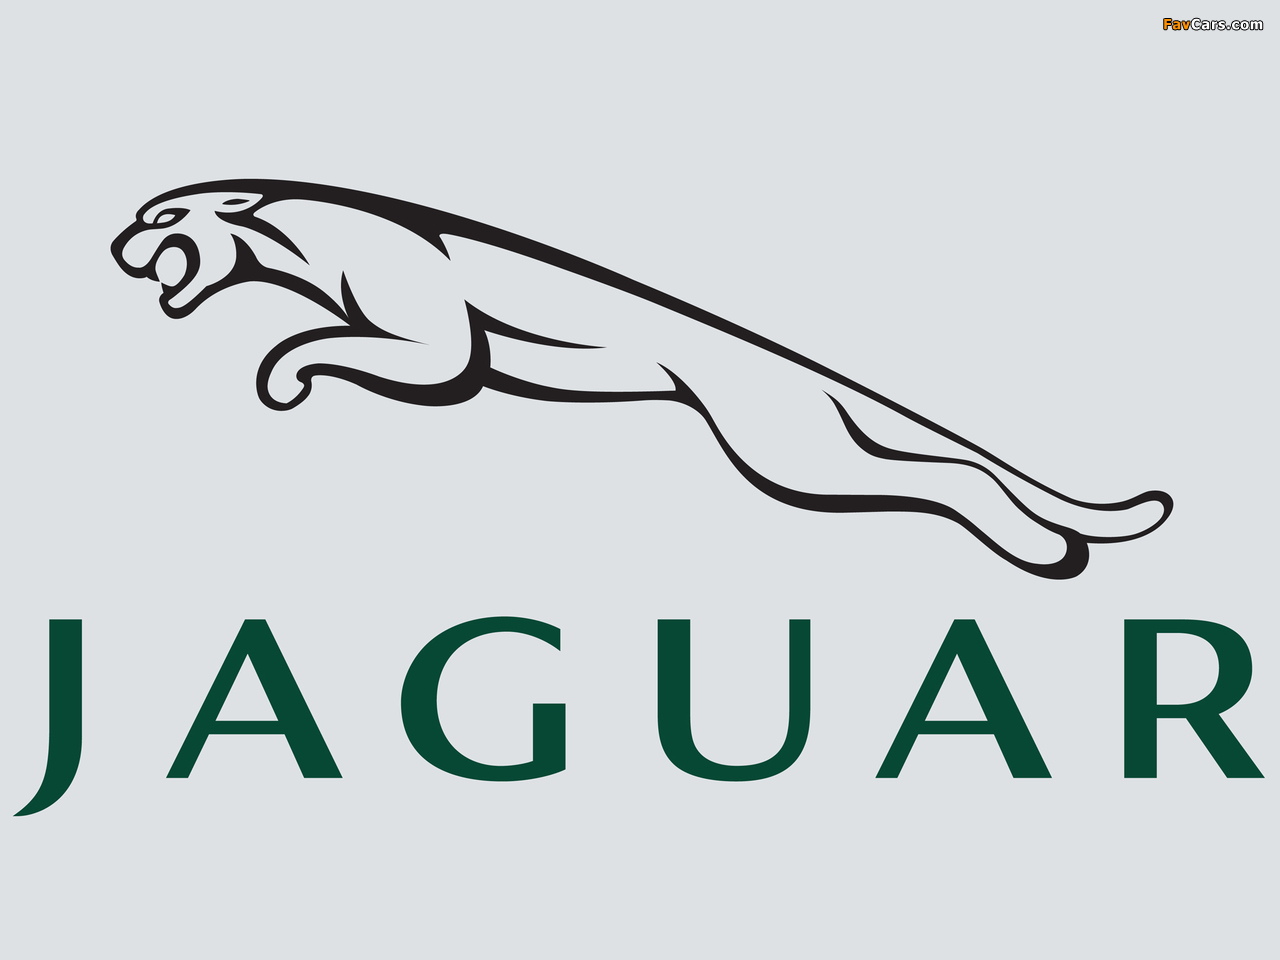 Images of Jaguar (1280 x 960)